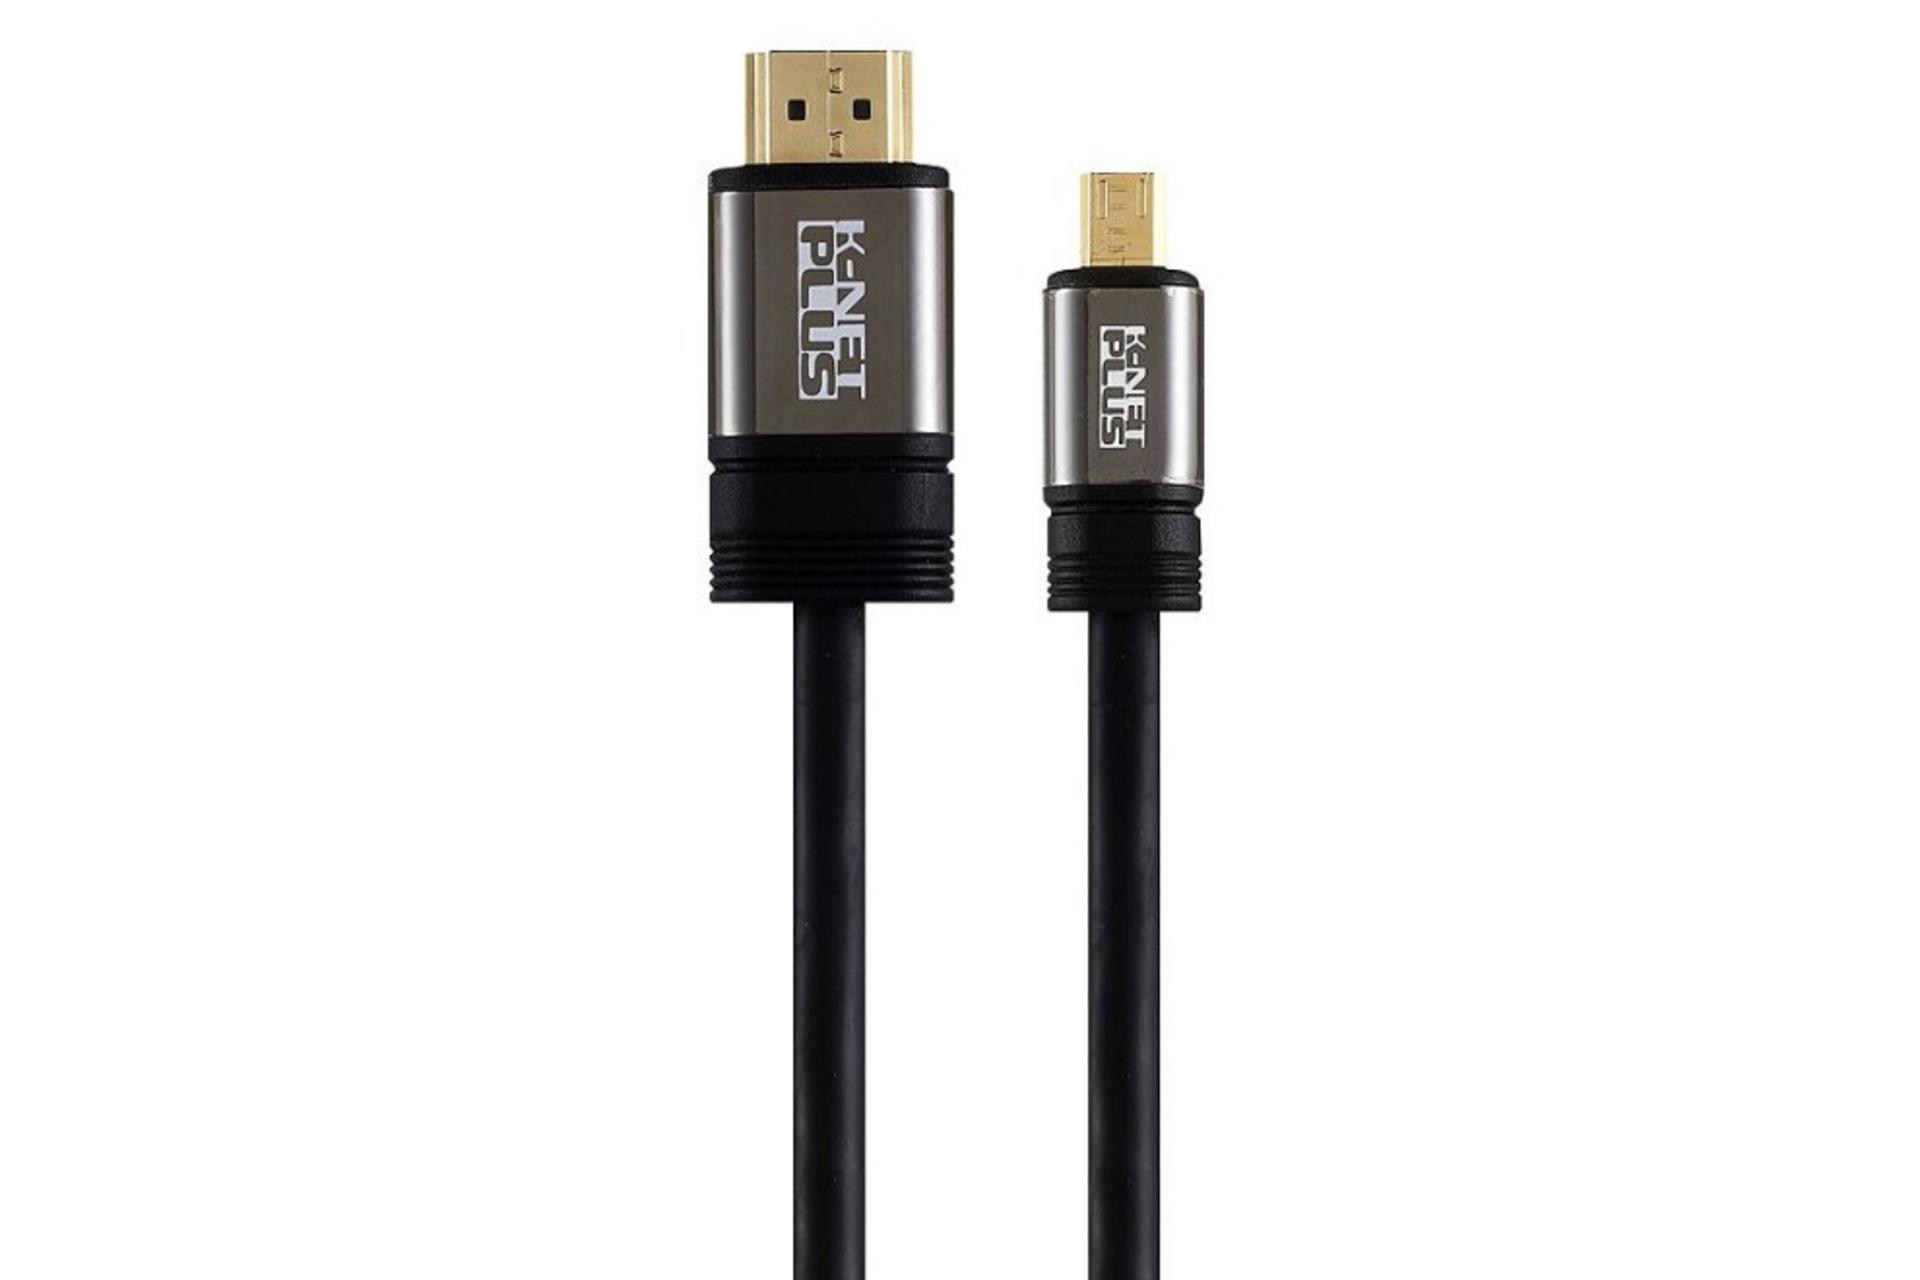 کابل کی نت پلاس HDMI به Micro HDMI مدل K-Net Plus KP-CHM2018 با طول 1.8 متر